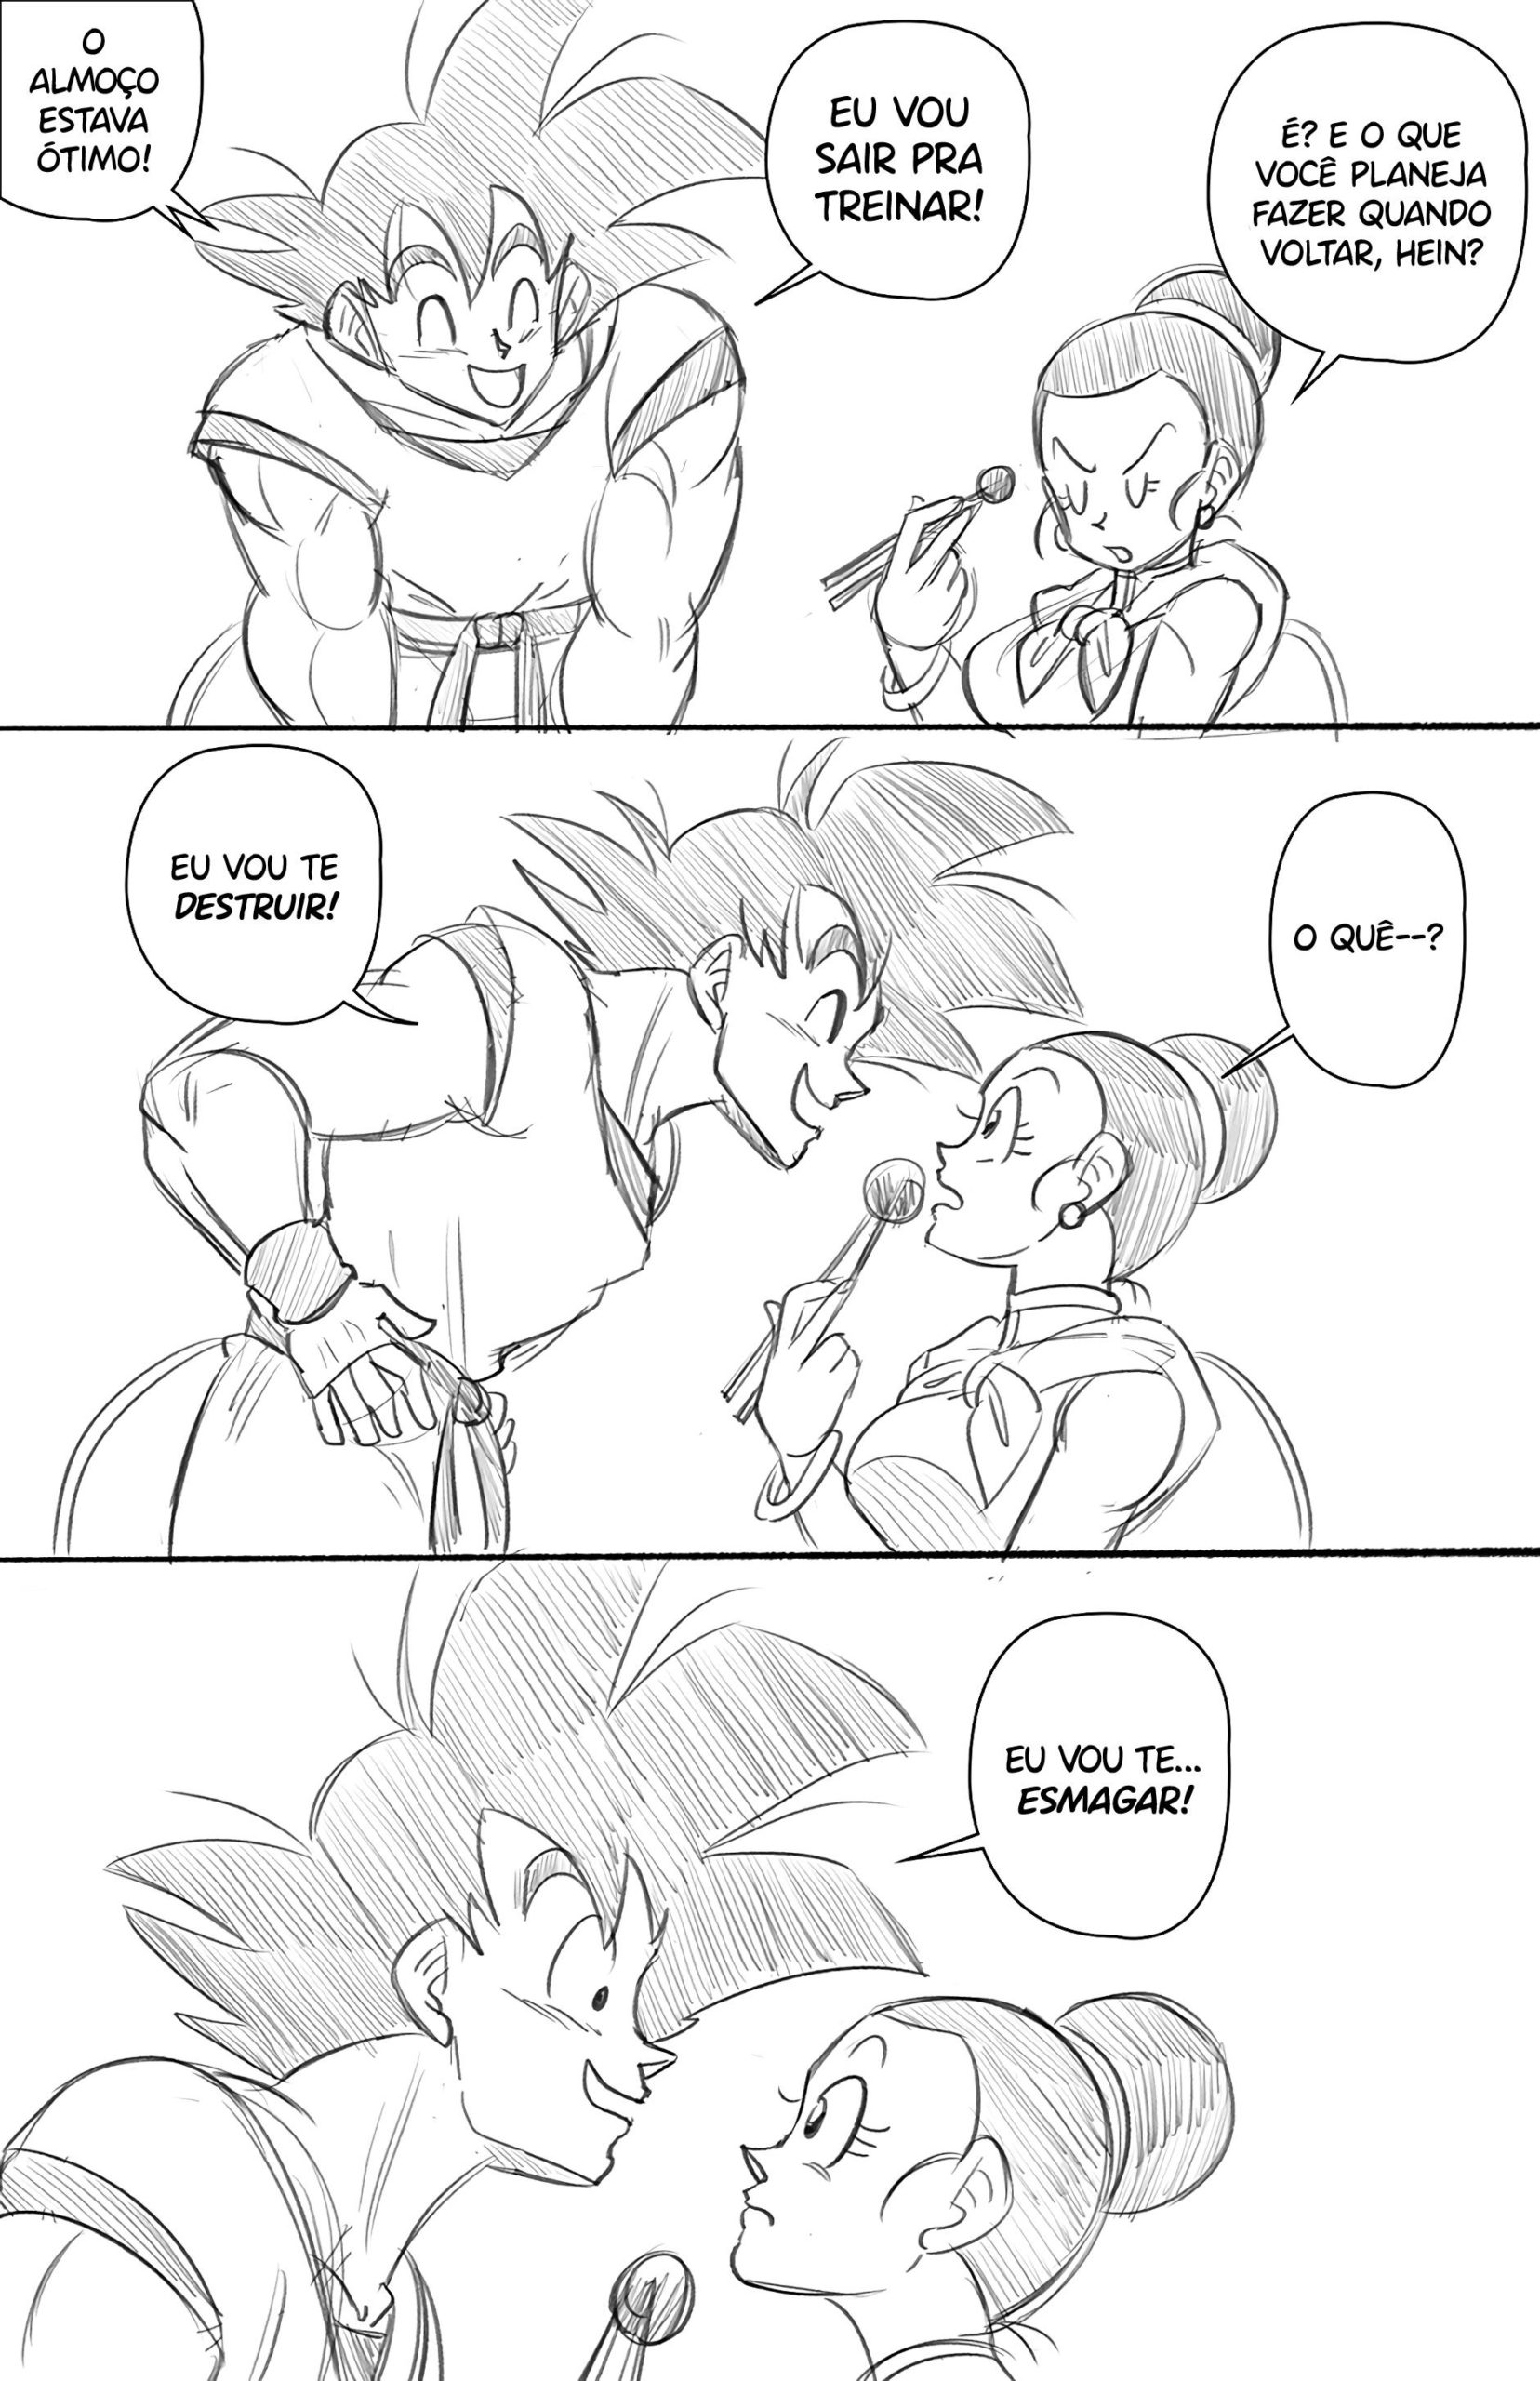 Goku faz anal com Chi Chi - Foto 2